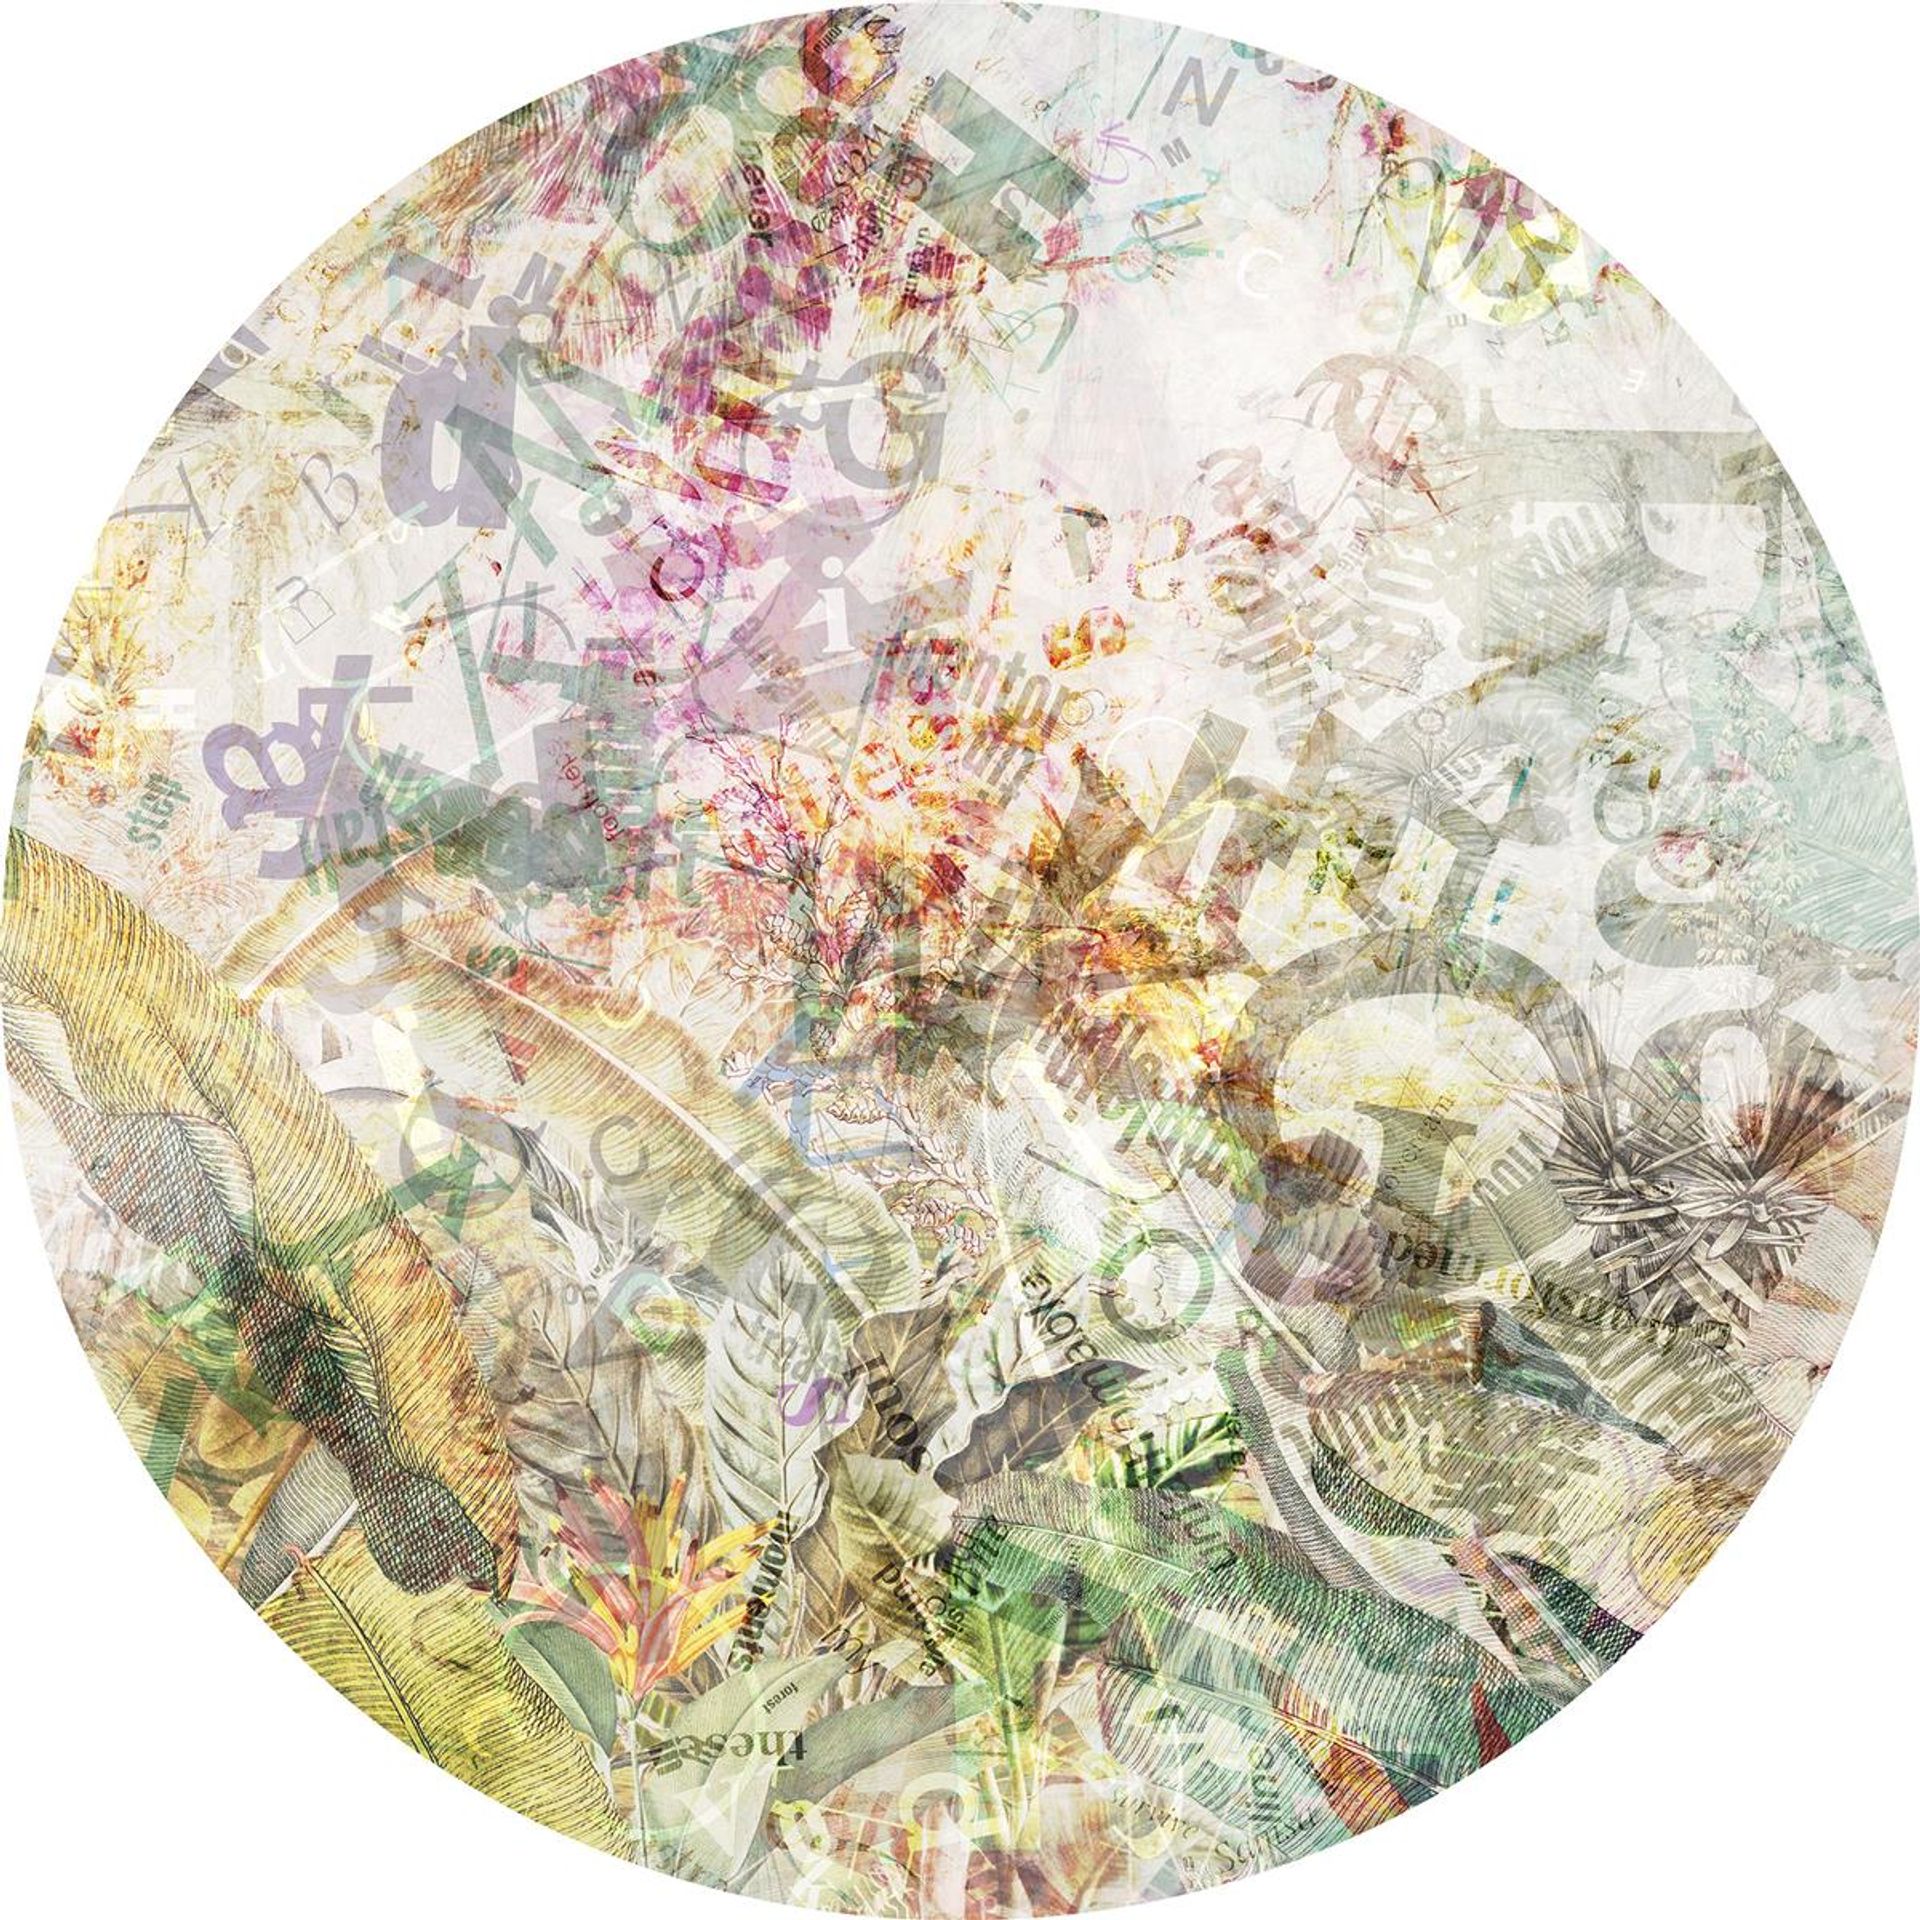 Selbstklebende Vlies Fototapete/Wandtattoo - Round Stories - Größe 125 x 125 cm